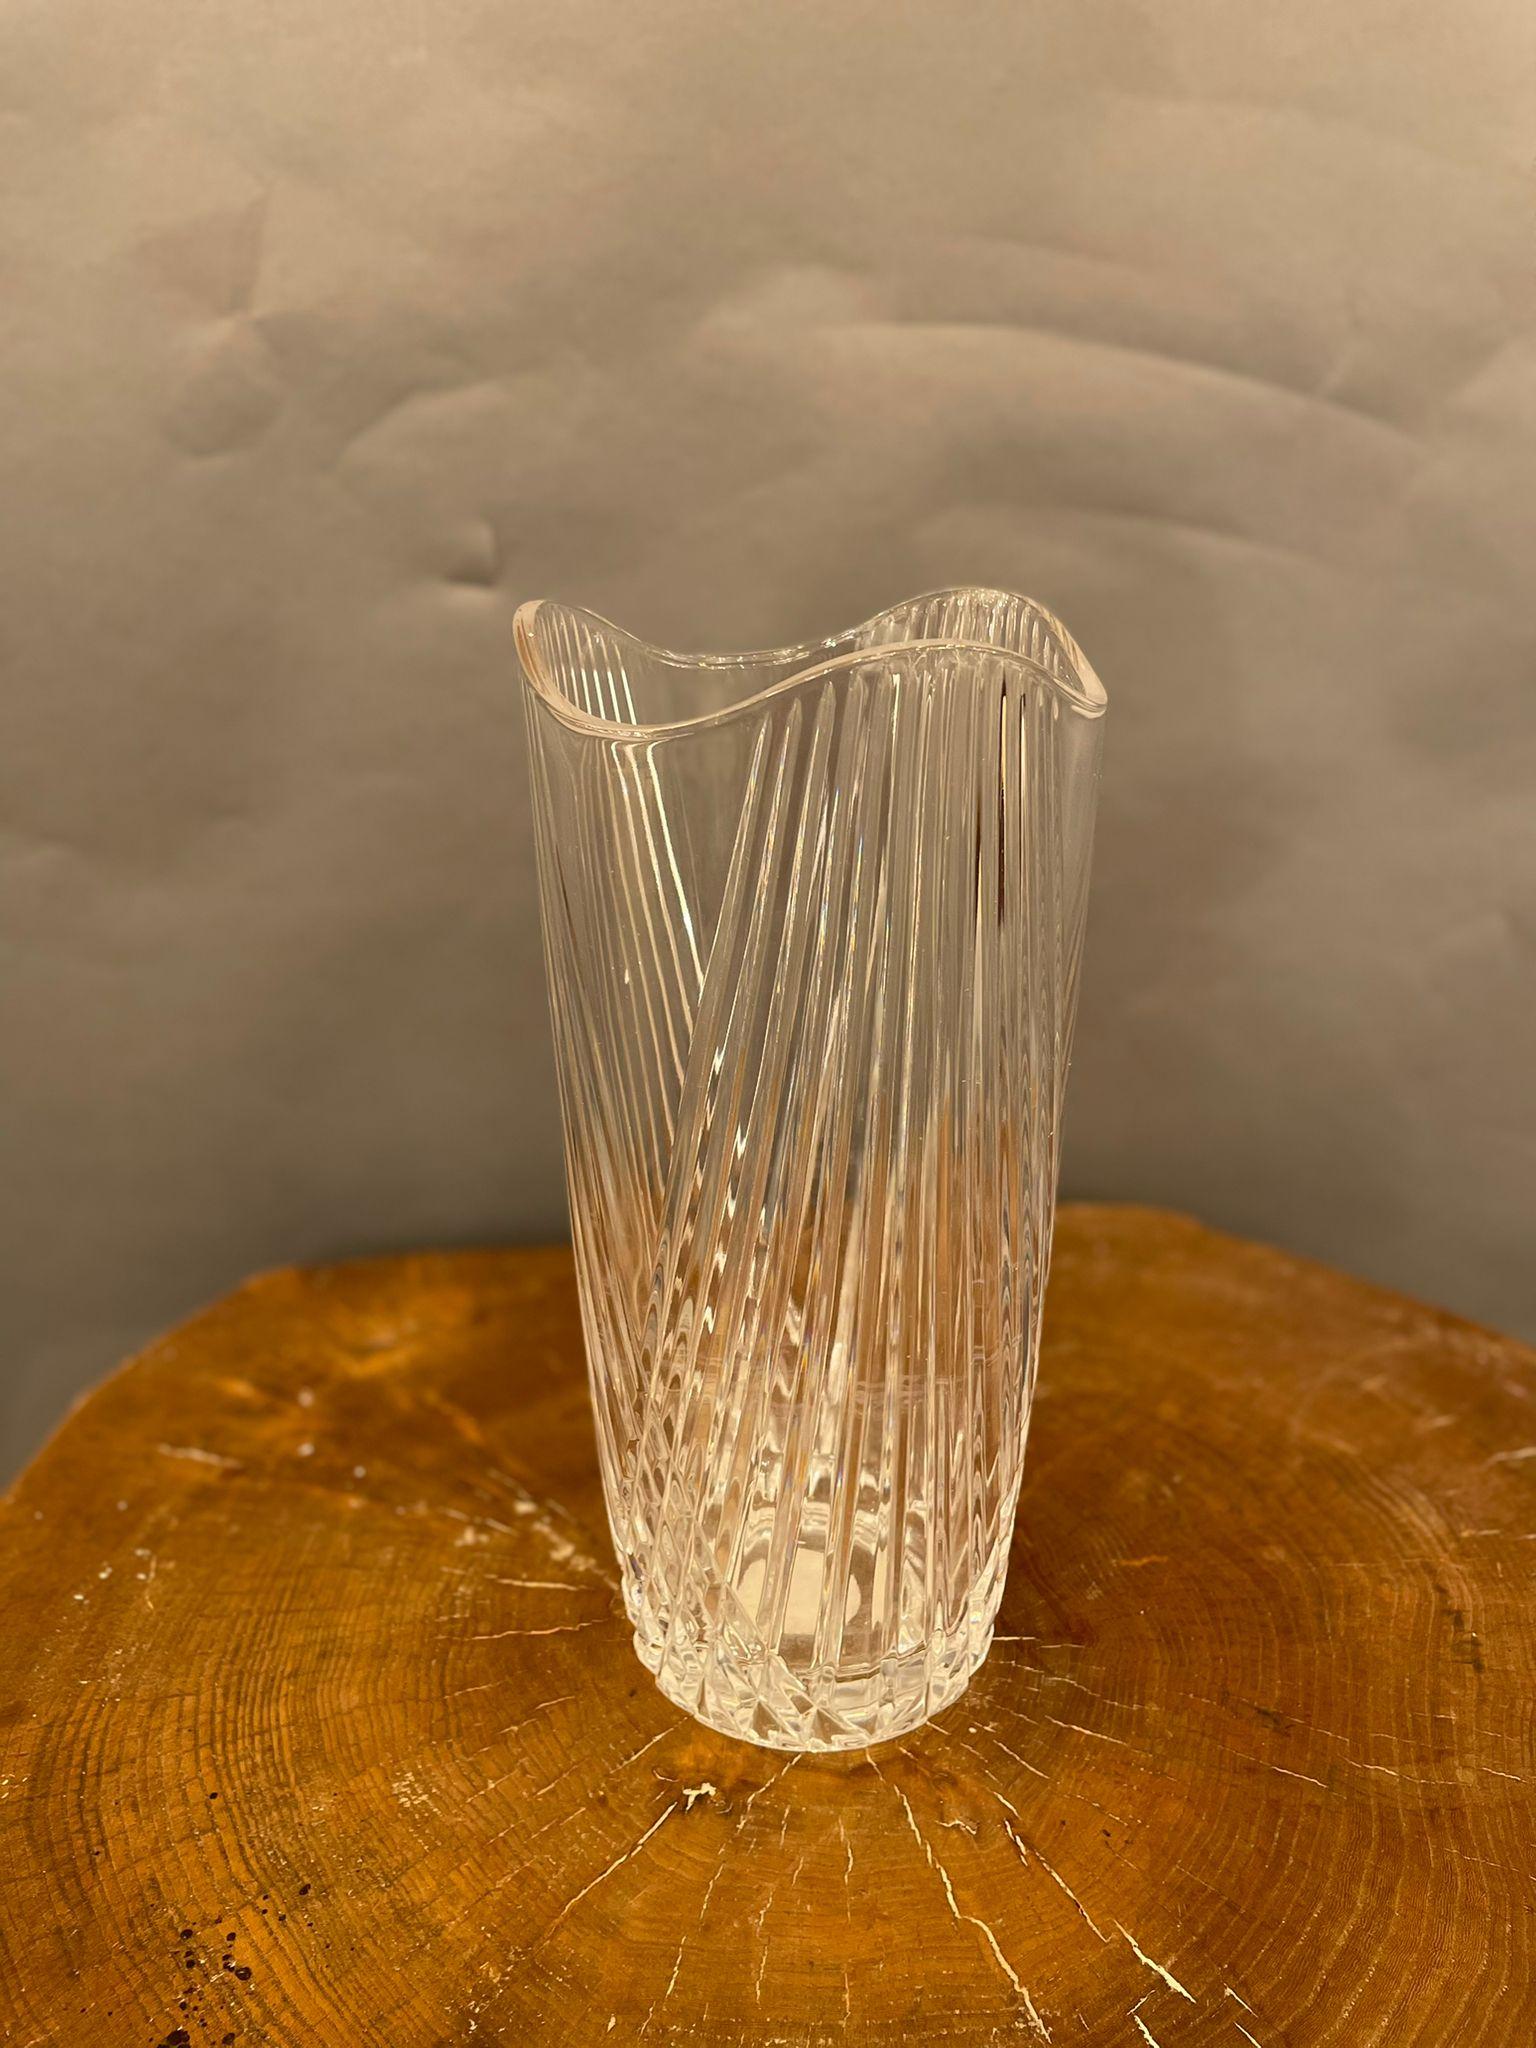 Le vase en verre Flowers est un magnifique objet décoratif en verre, réalisé dans les années 1970. Très élégant vase en verre transparent avec des bords supérieurs ondulés et une décoration rayée le long du corps.